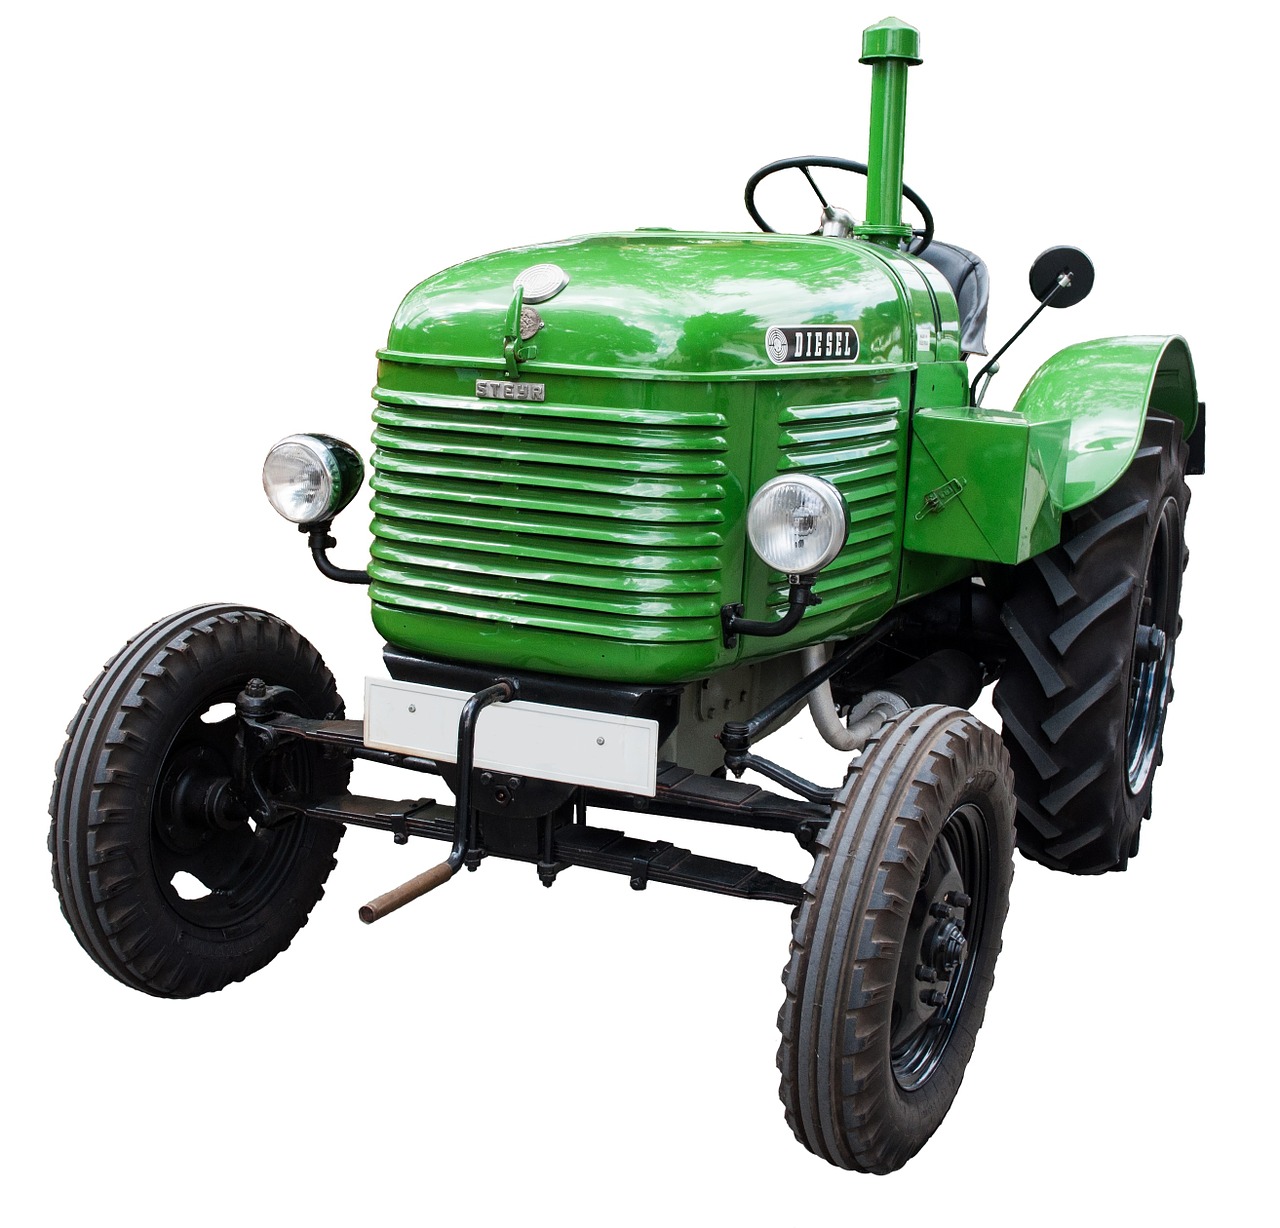 Old diesel tractor